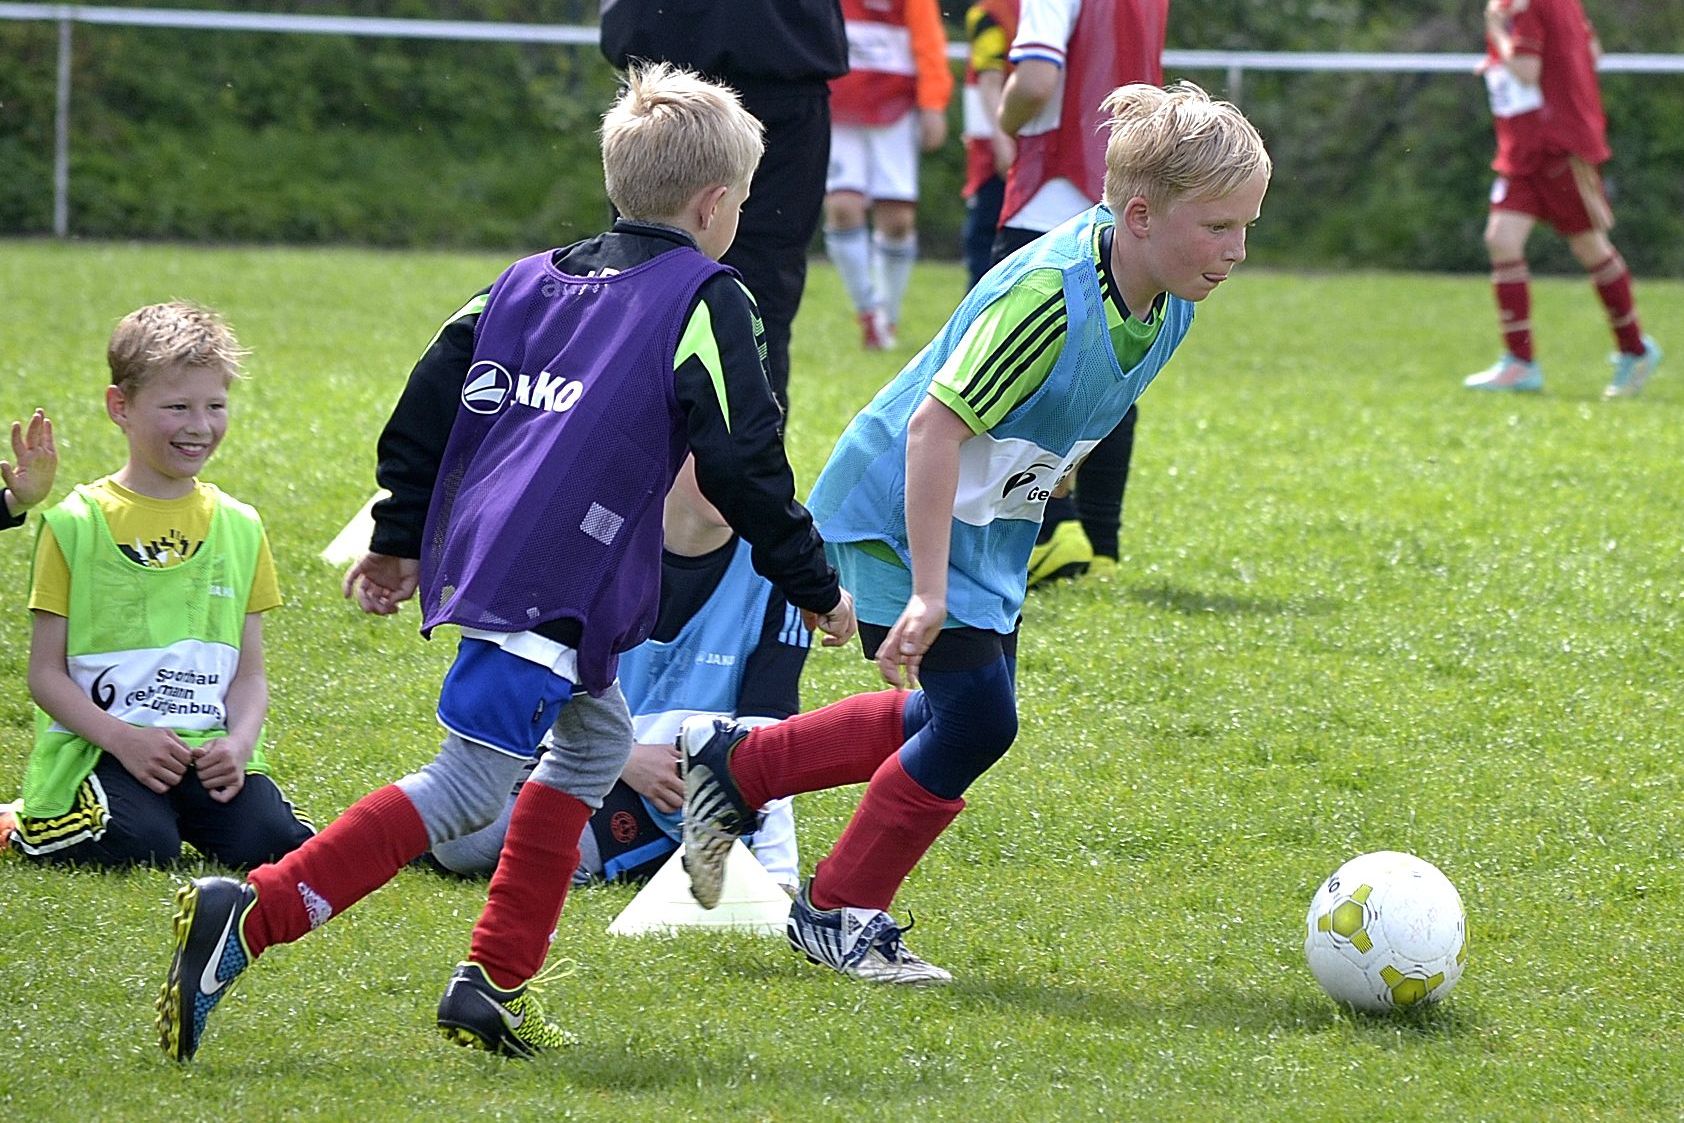   ابتكار في كرة القدم لتسلية الصغار يثير جدلا بين الكبار